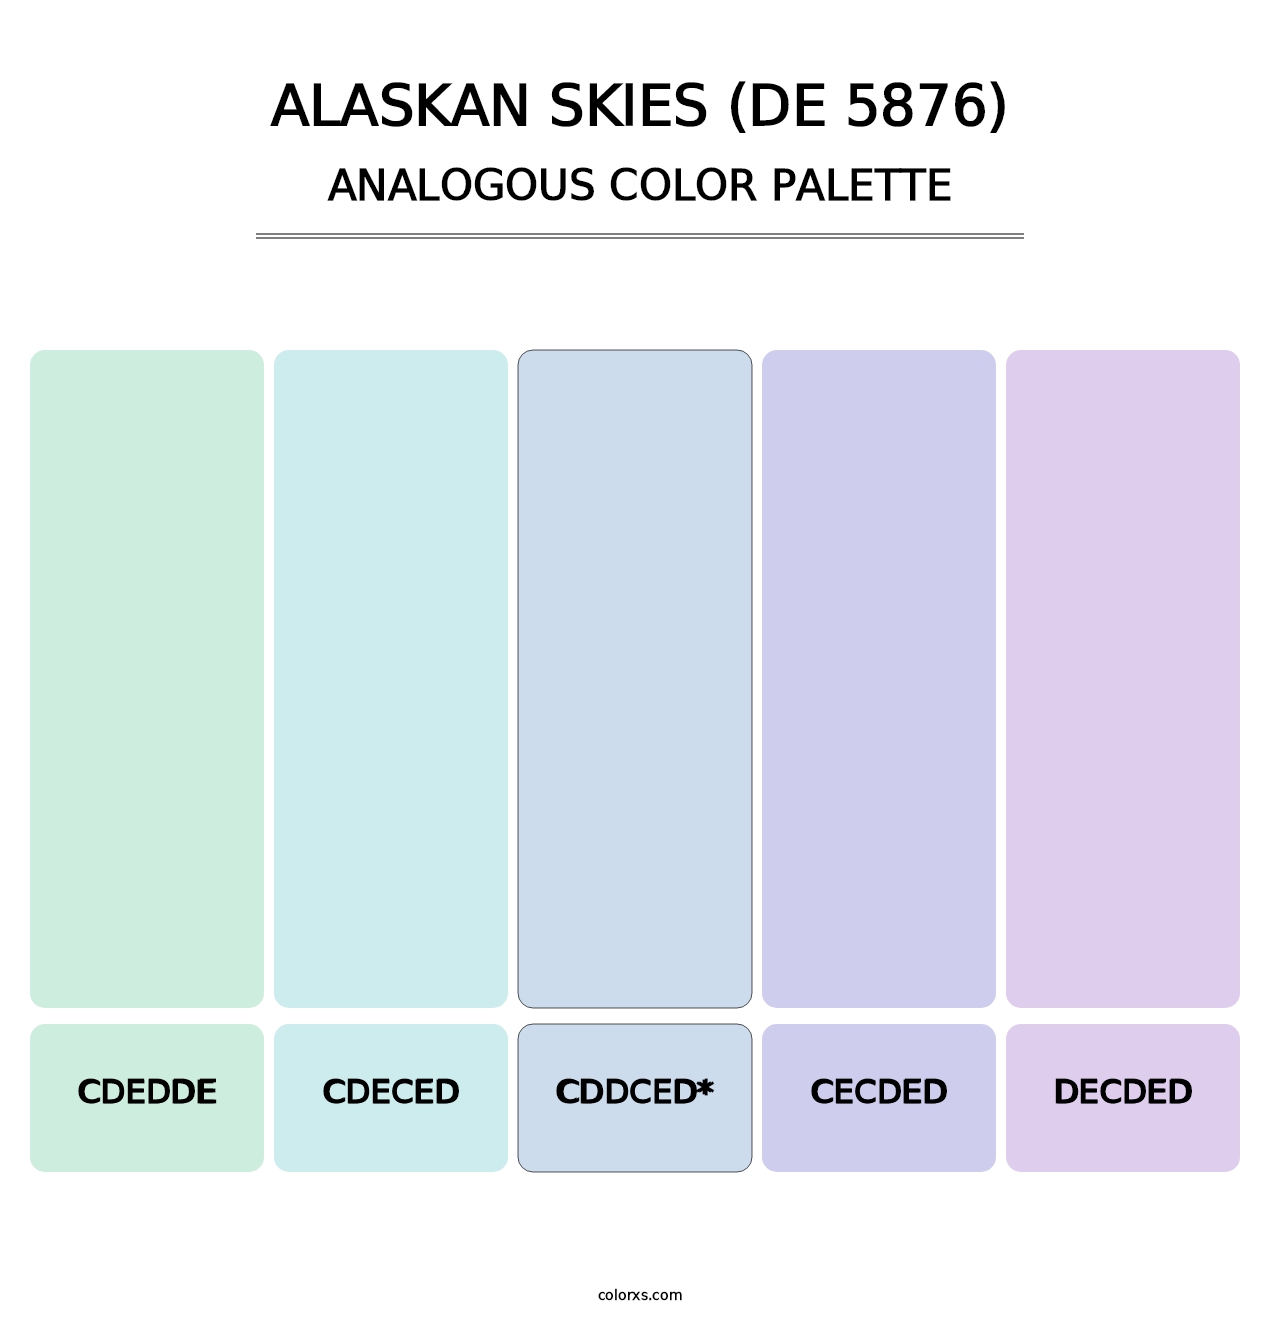 Alaskan Skies (DE 5876) - Analogous Color Palette